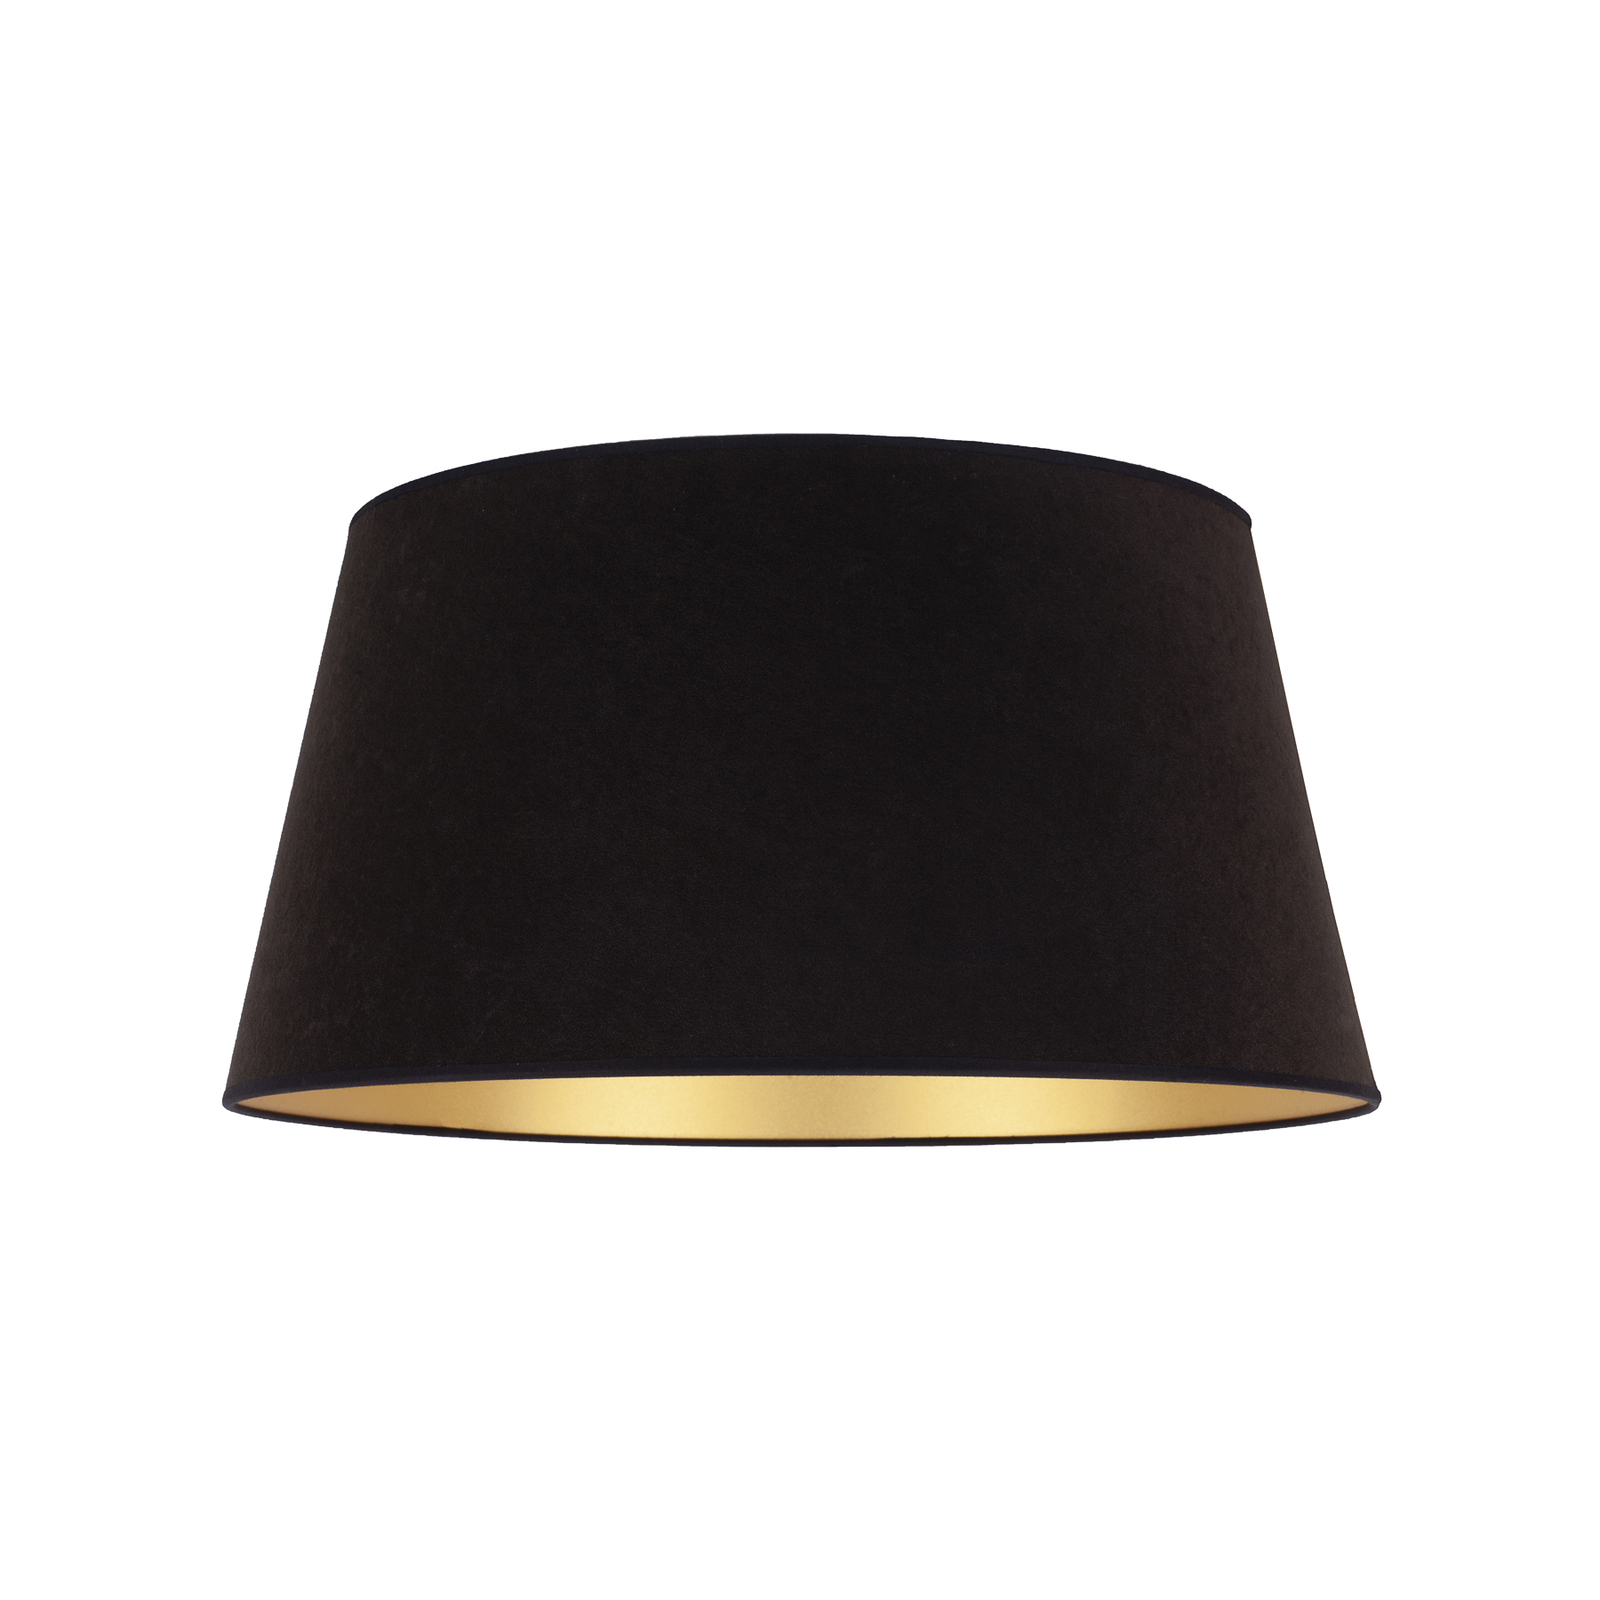 Kúp alakú lámpaernyő, magasság 25,5 cm, fekete/arany